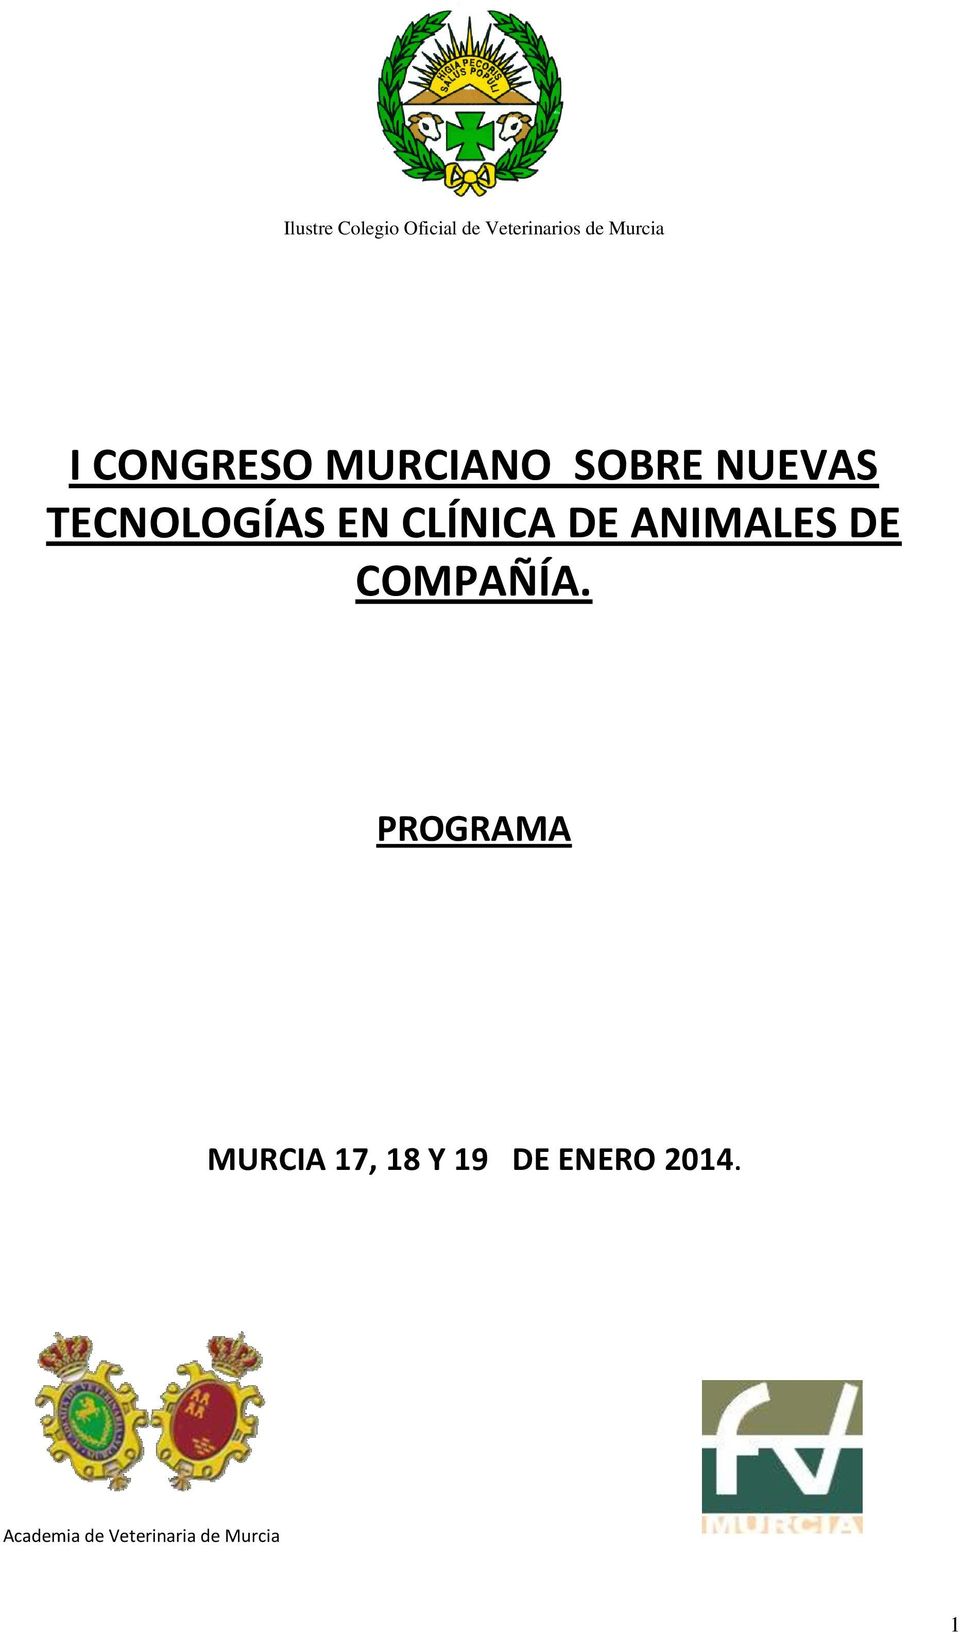 CLÍNICA DE ANIMALES DE COMPAÑÍA.